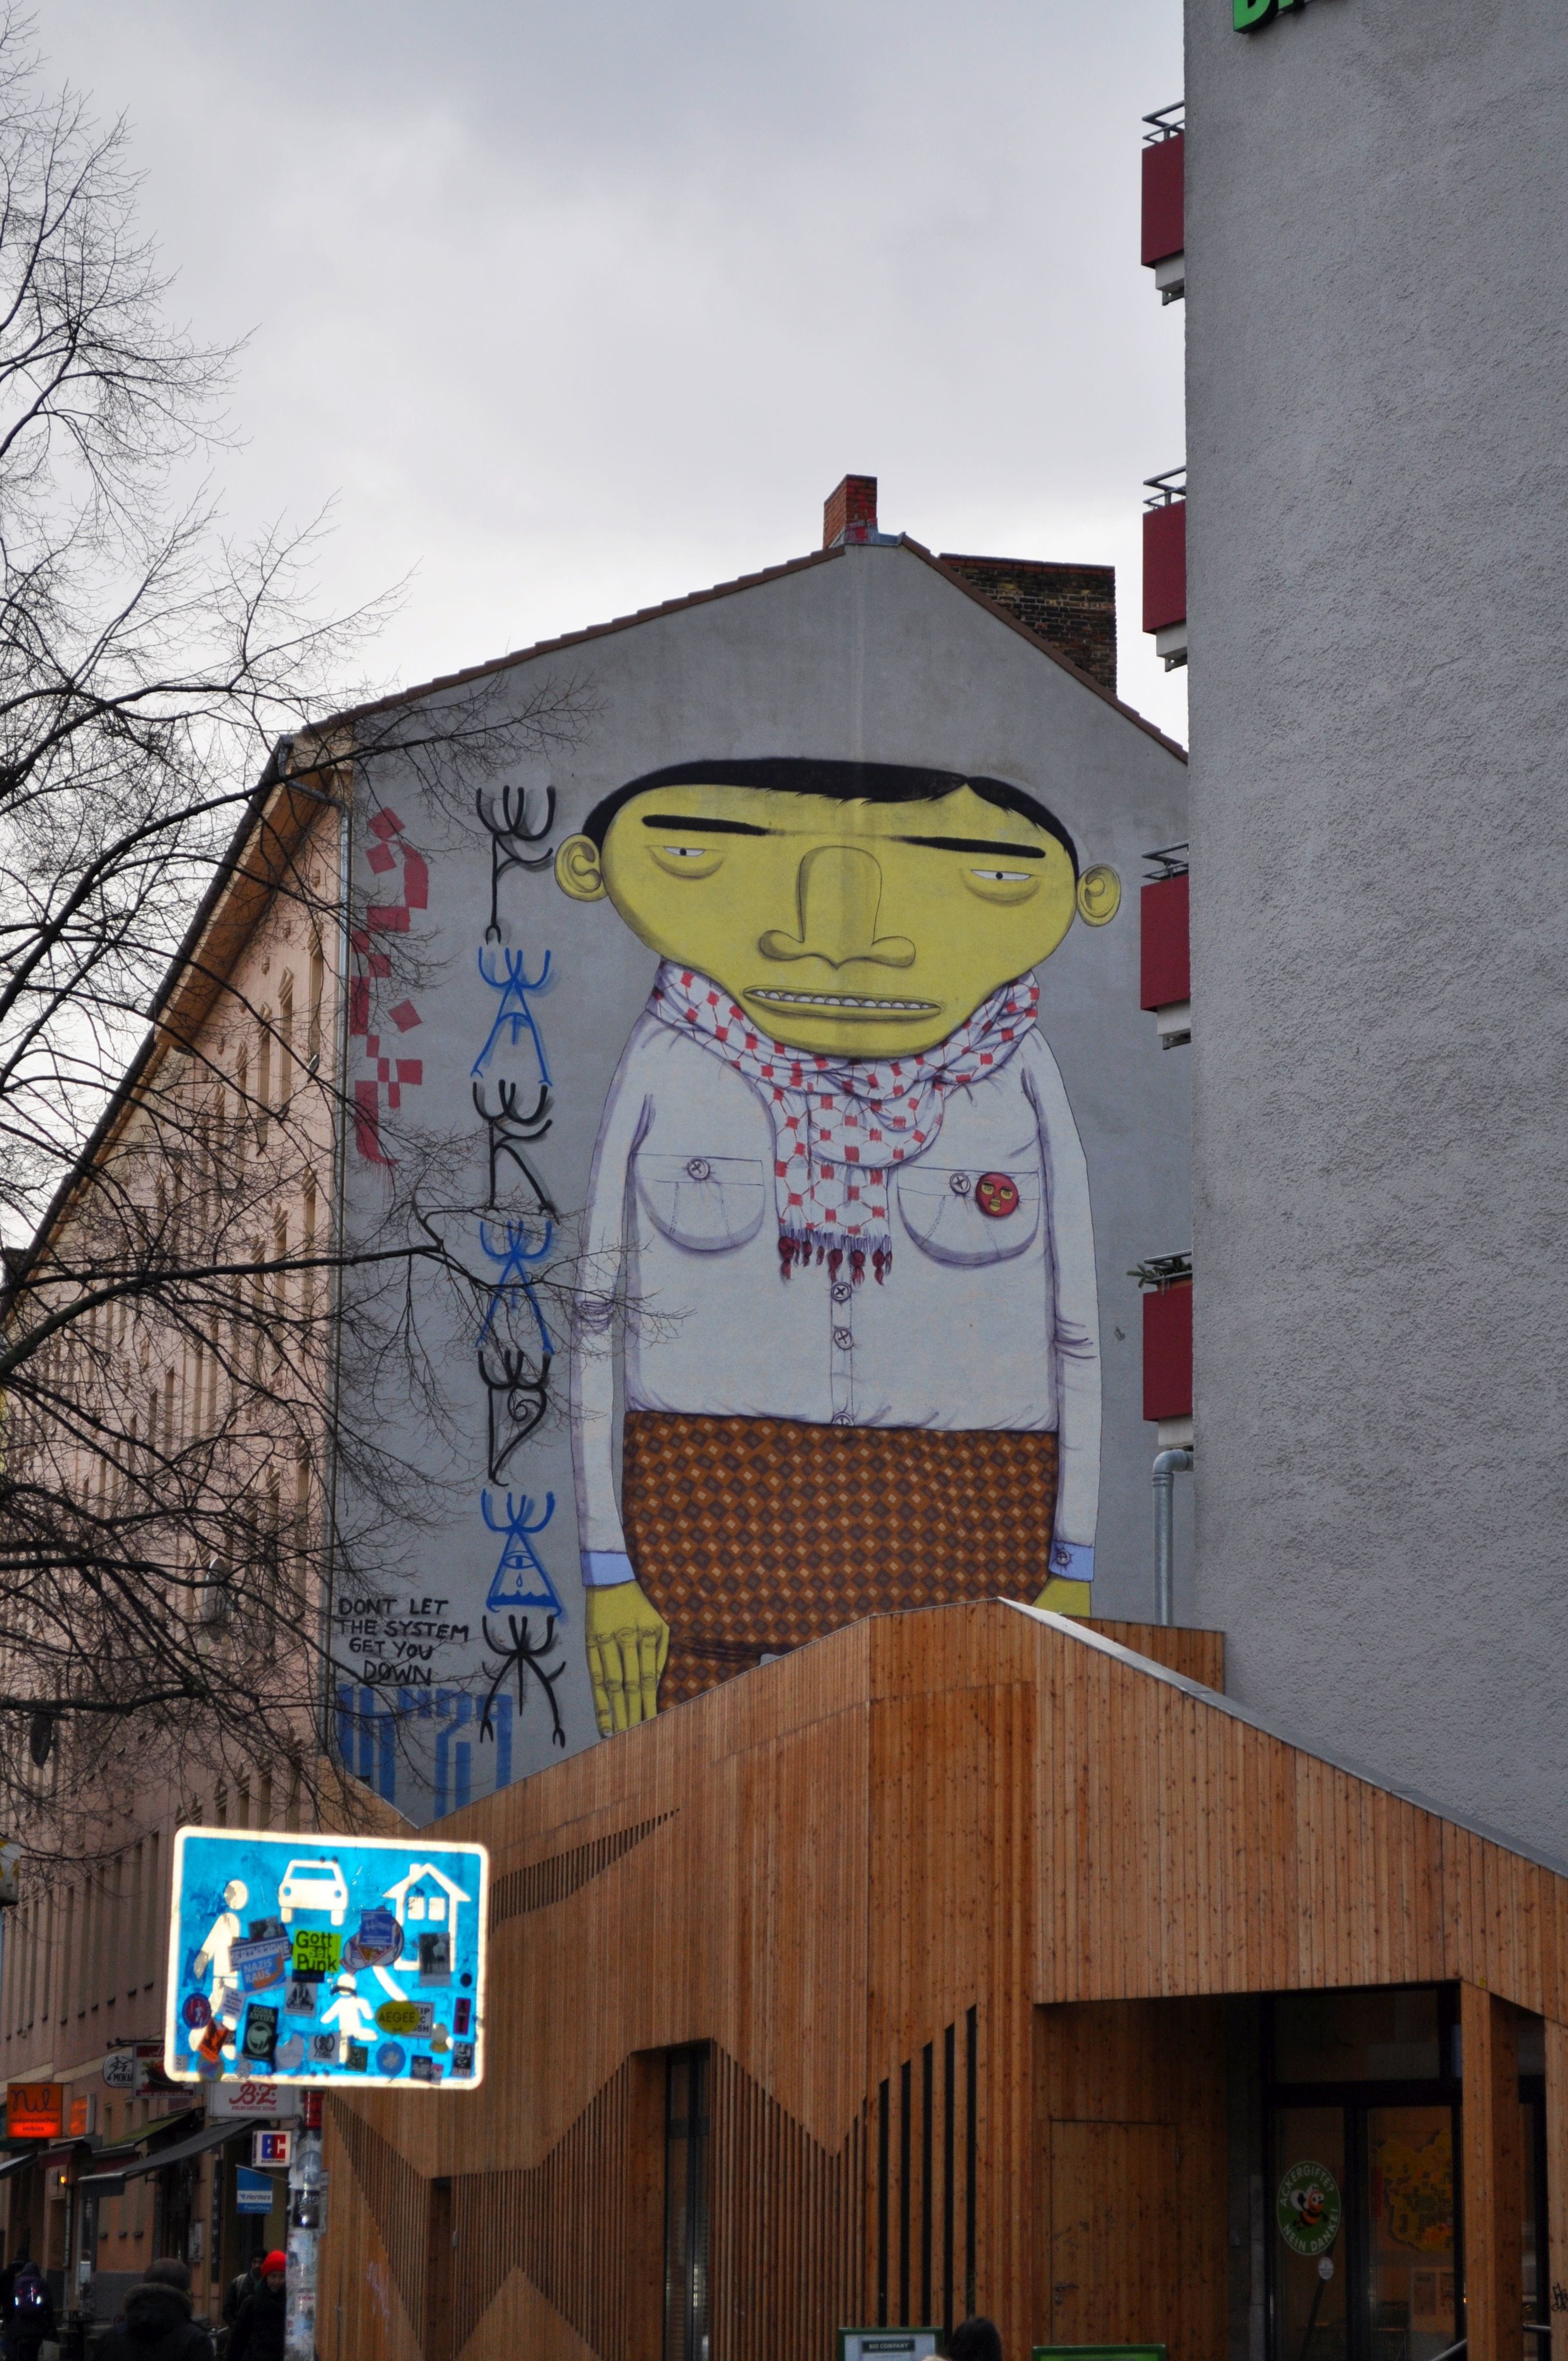 Graffiti 4659  by the artist Osgemeos captured by elettrotajik in Berlin Germany